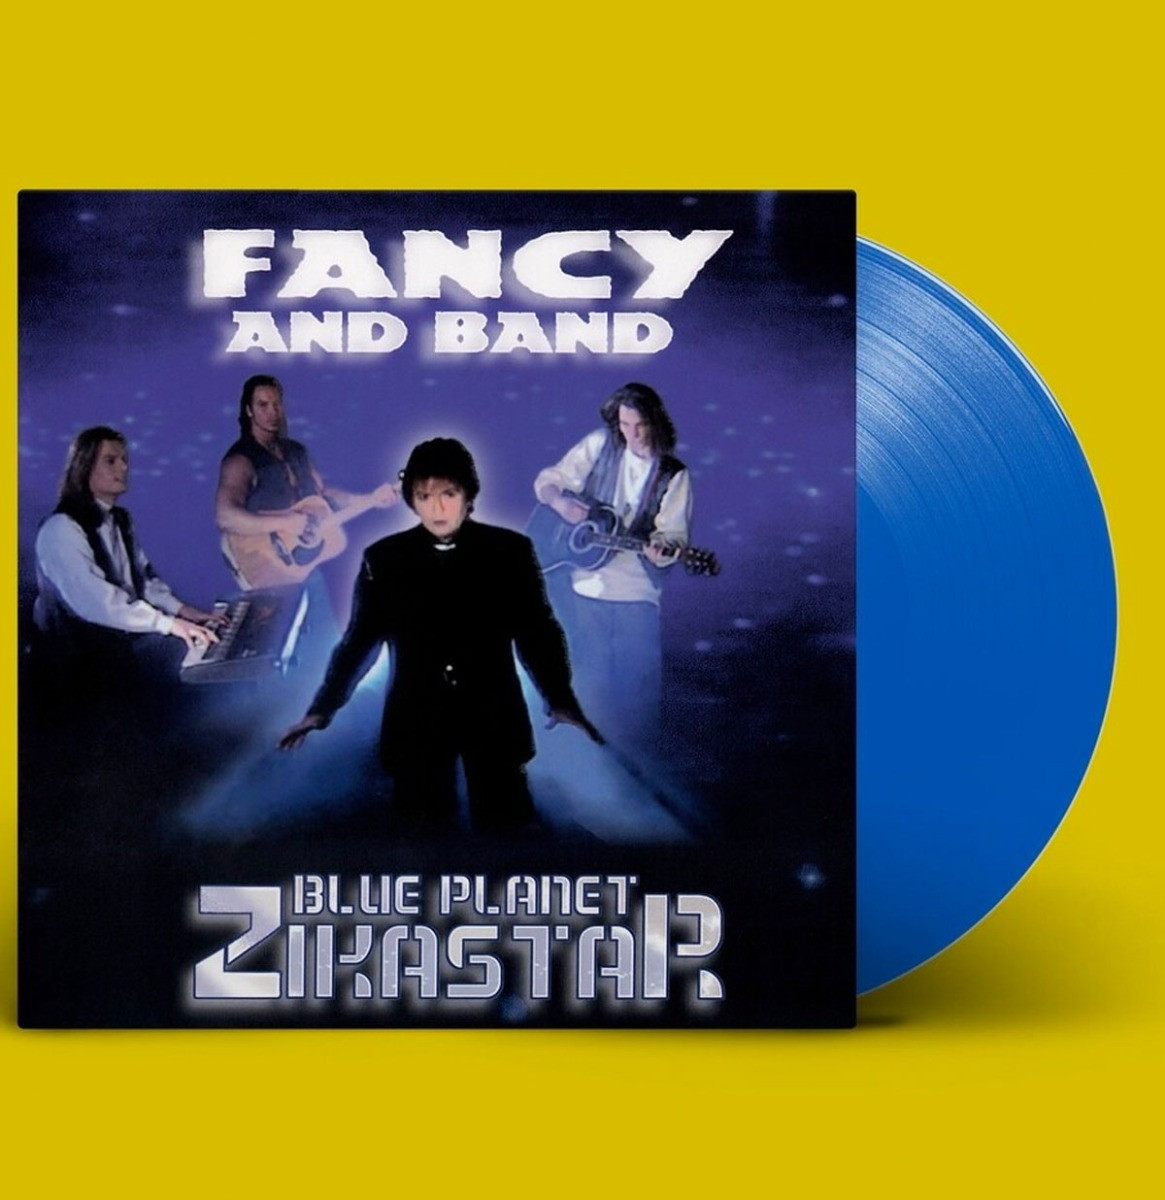 Fancy And Band - Blue Planet Zikastar LP Blauw Vinyl ZEER GELIMITEERD